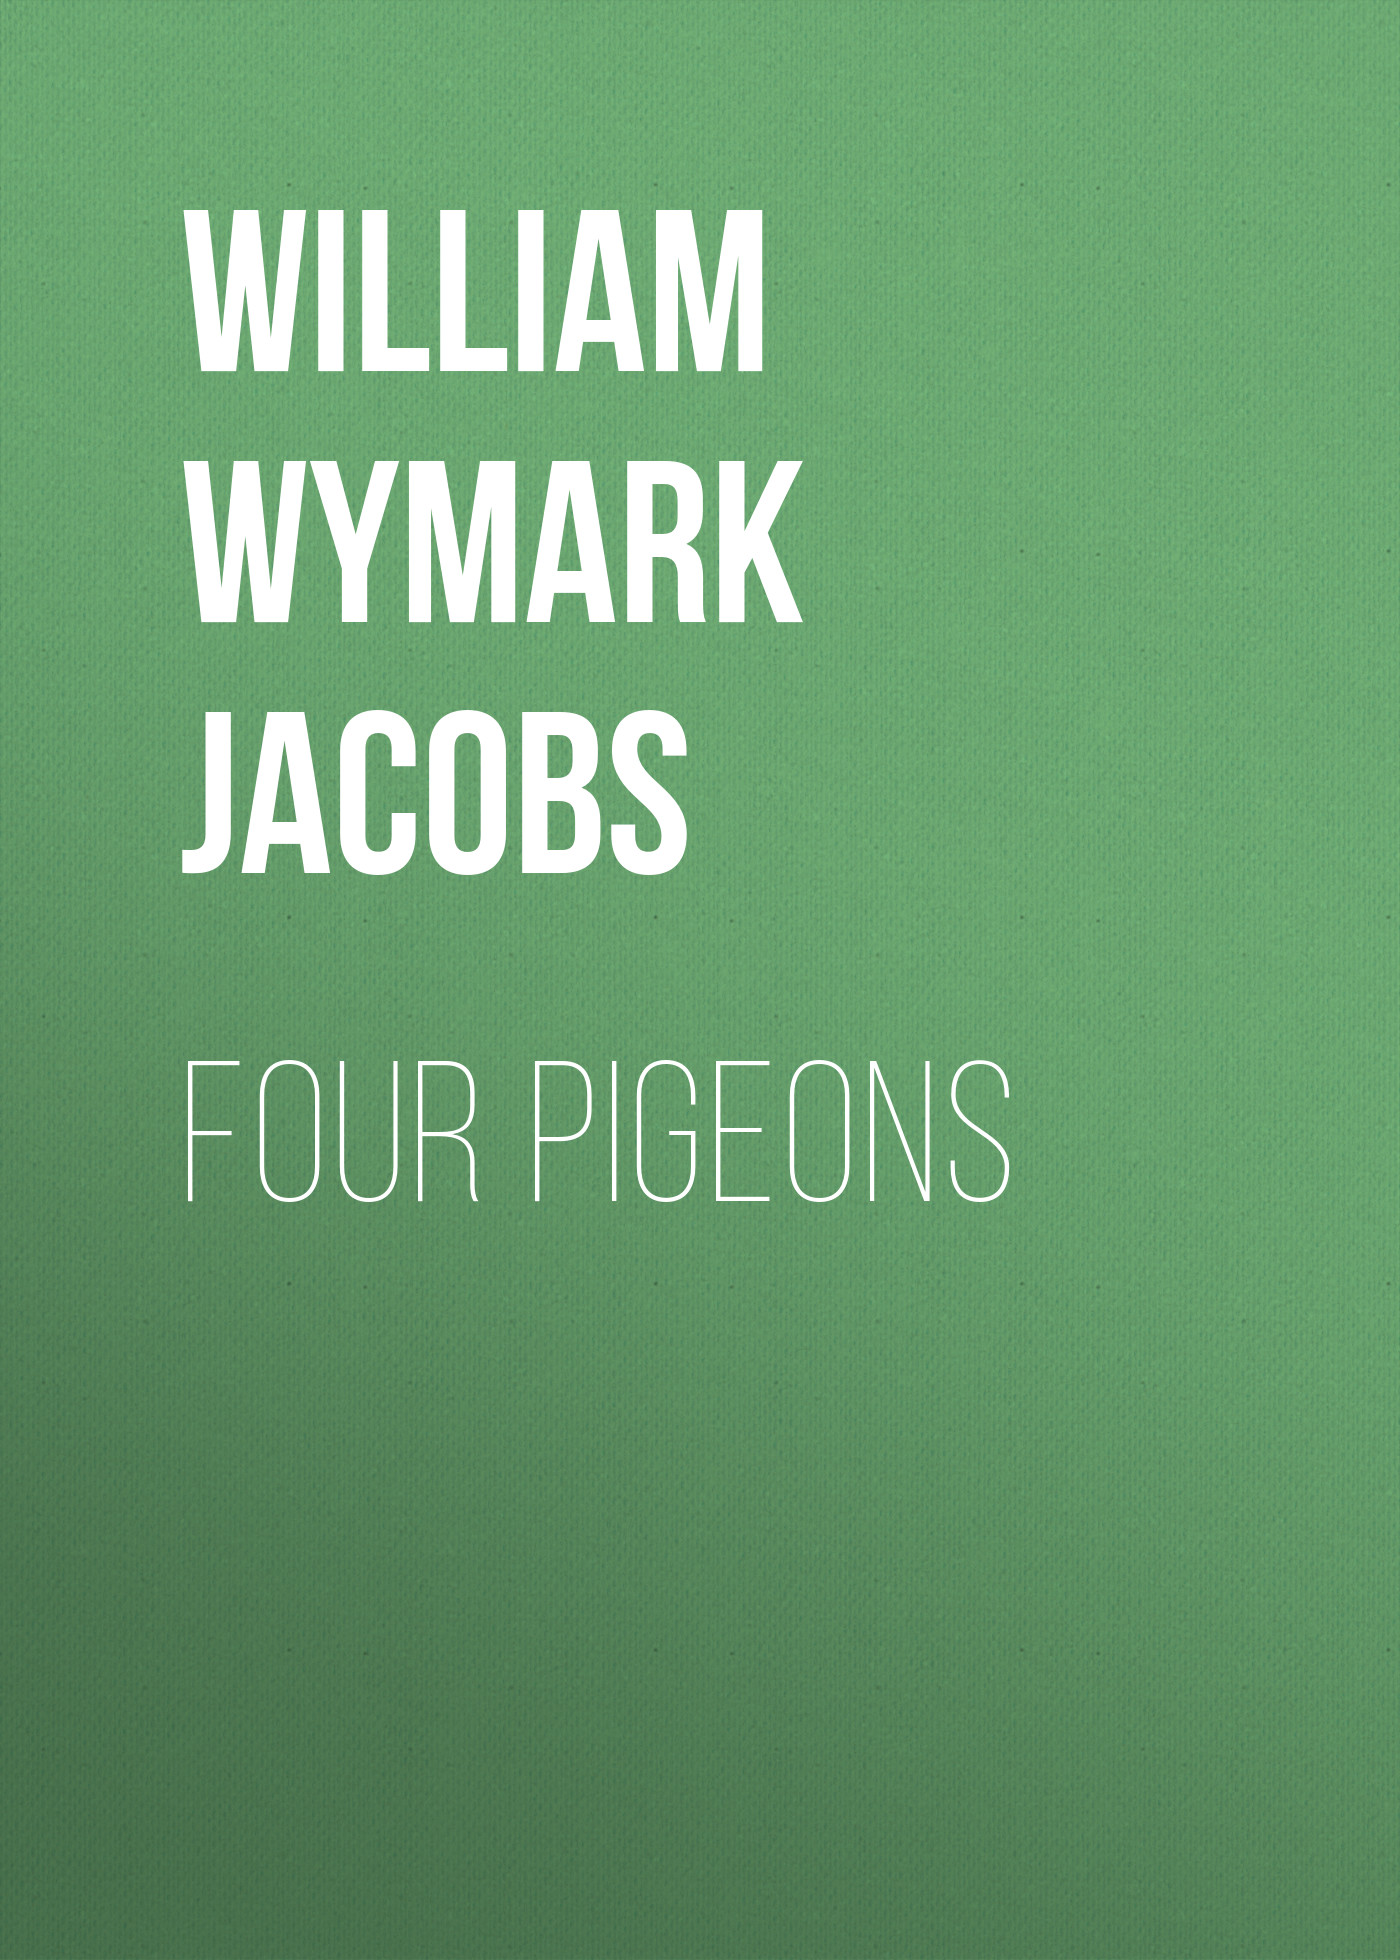 Книга Four Pigeons из серии , созданная William Wymark Jacobs, может относится к жанру Зарубежная классика, Зарубежная старинная литература. Стоимость электронной книги Four Pigeons с идентификатором 34842414 составляет 0 руб.